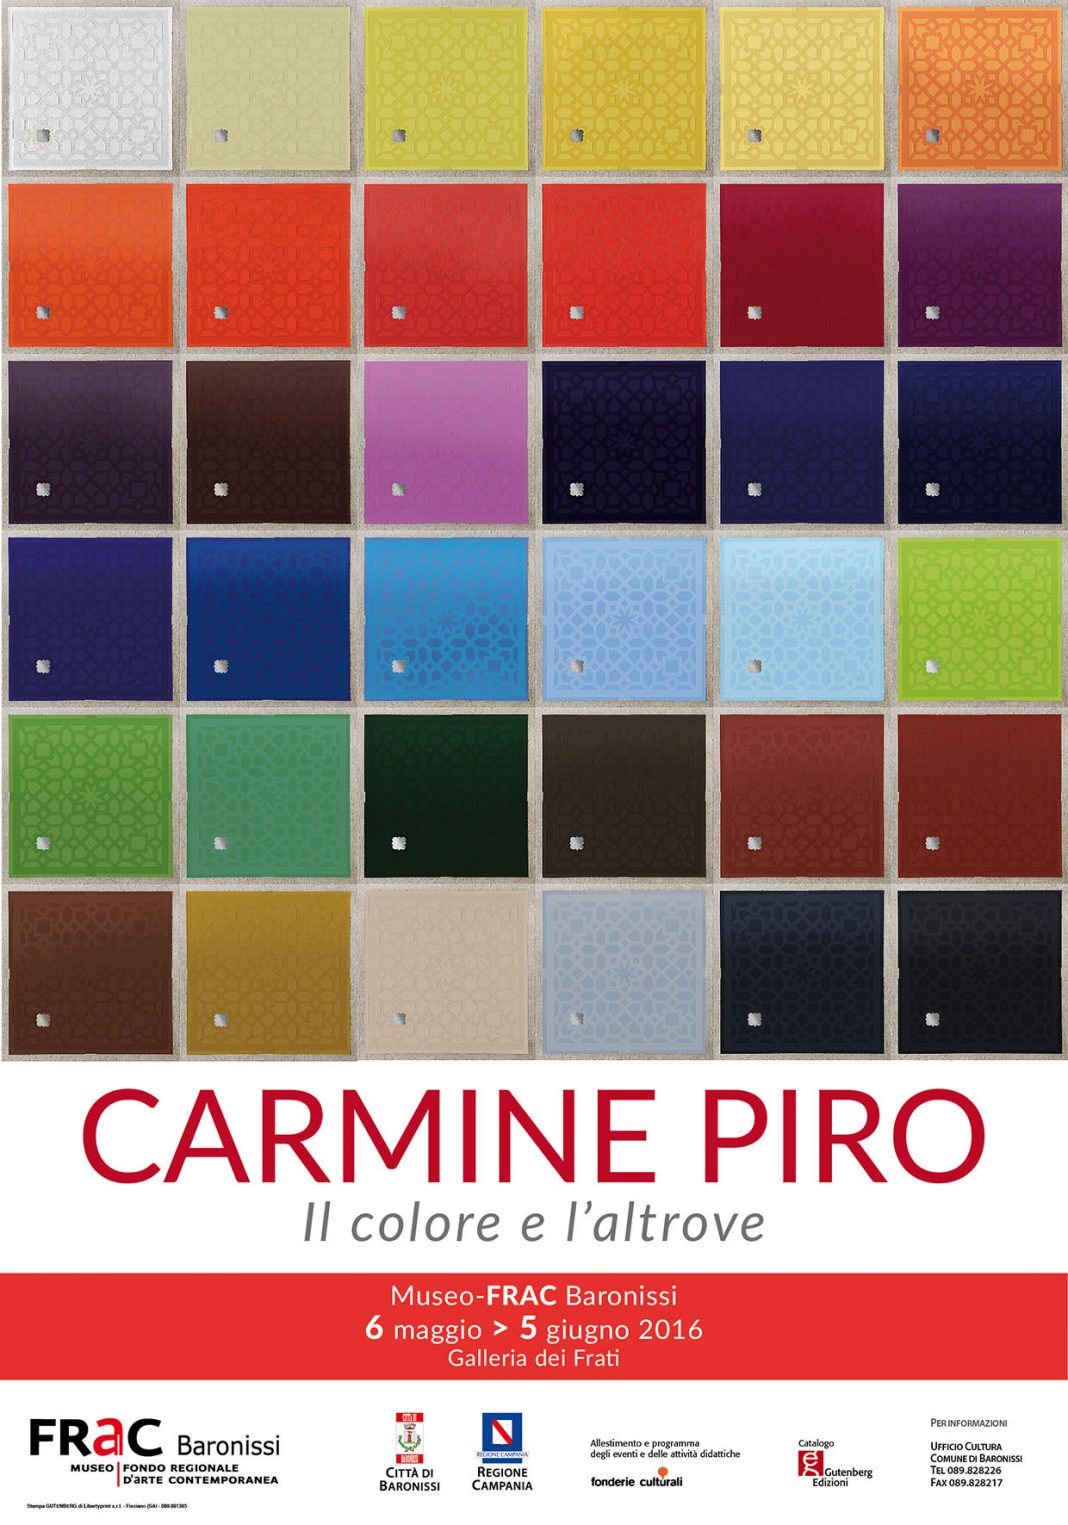 Carmine Piro – Il colore e l’altrovehttps://www.exibart.com/repository/media/eventi/2016/05/carmine-piro-8211-il-colore-e-l8217altrove-1068x1525.jpg